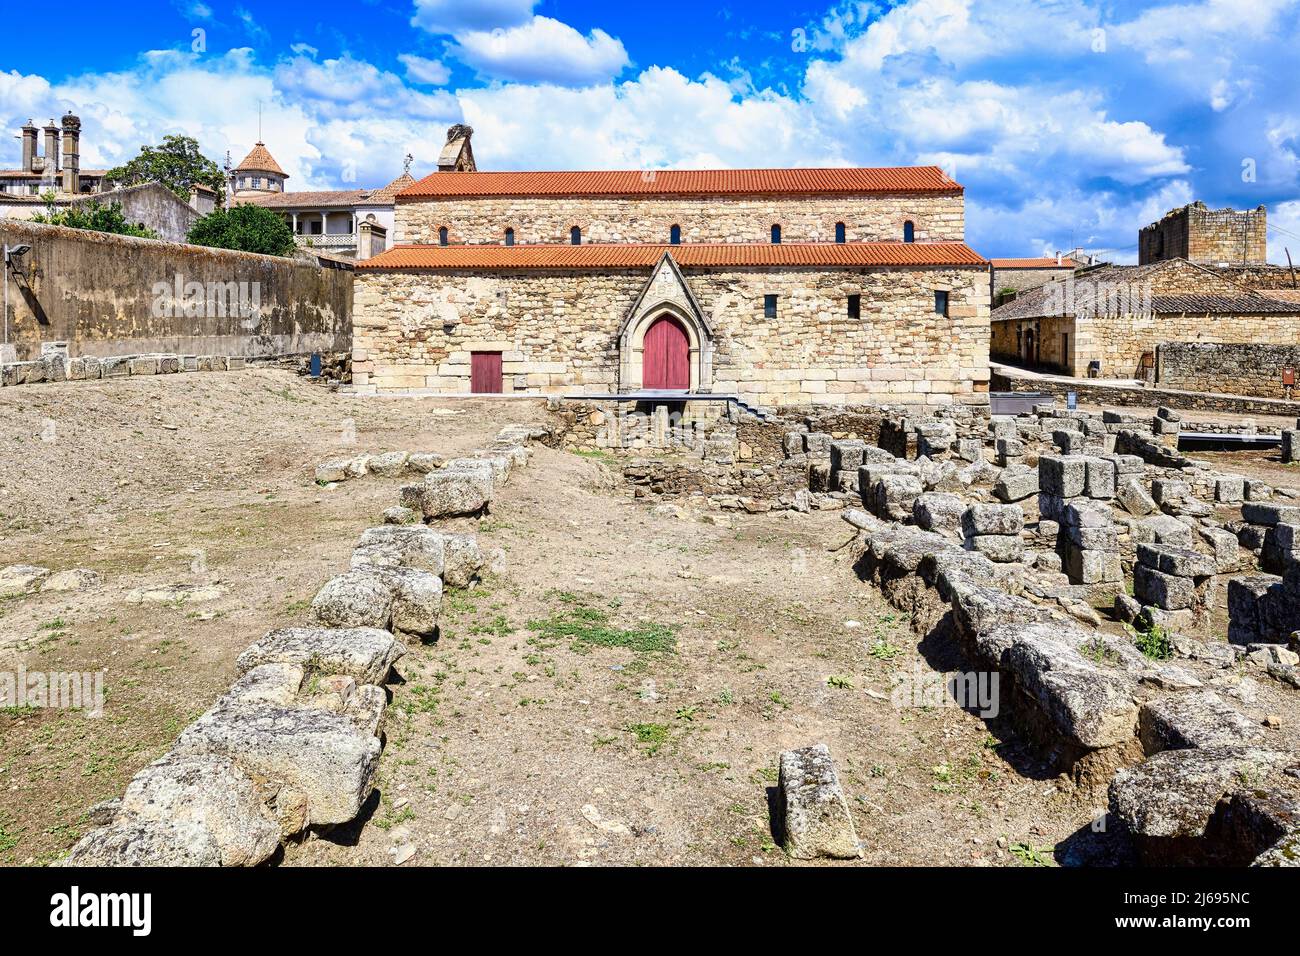 Cattedrale cattolica smantellata e sito archeologico di scavo, Idanha-a-Velha, Serra da Estrela, Beira alta, Portogallo, Europa Foto Stock